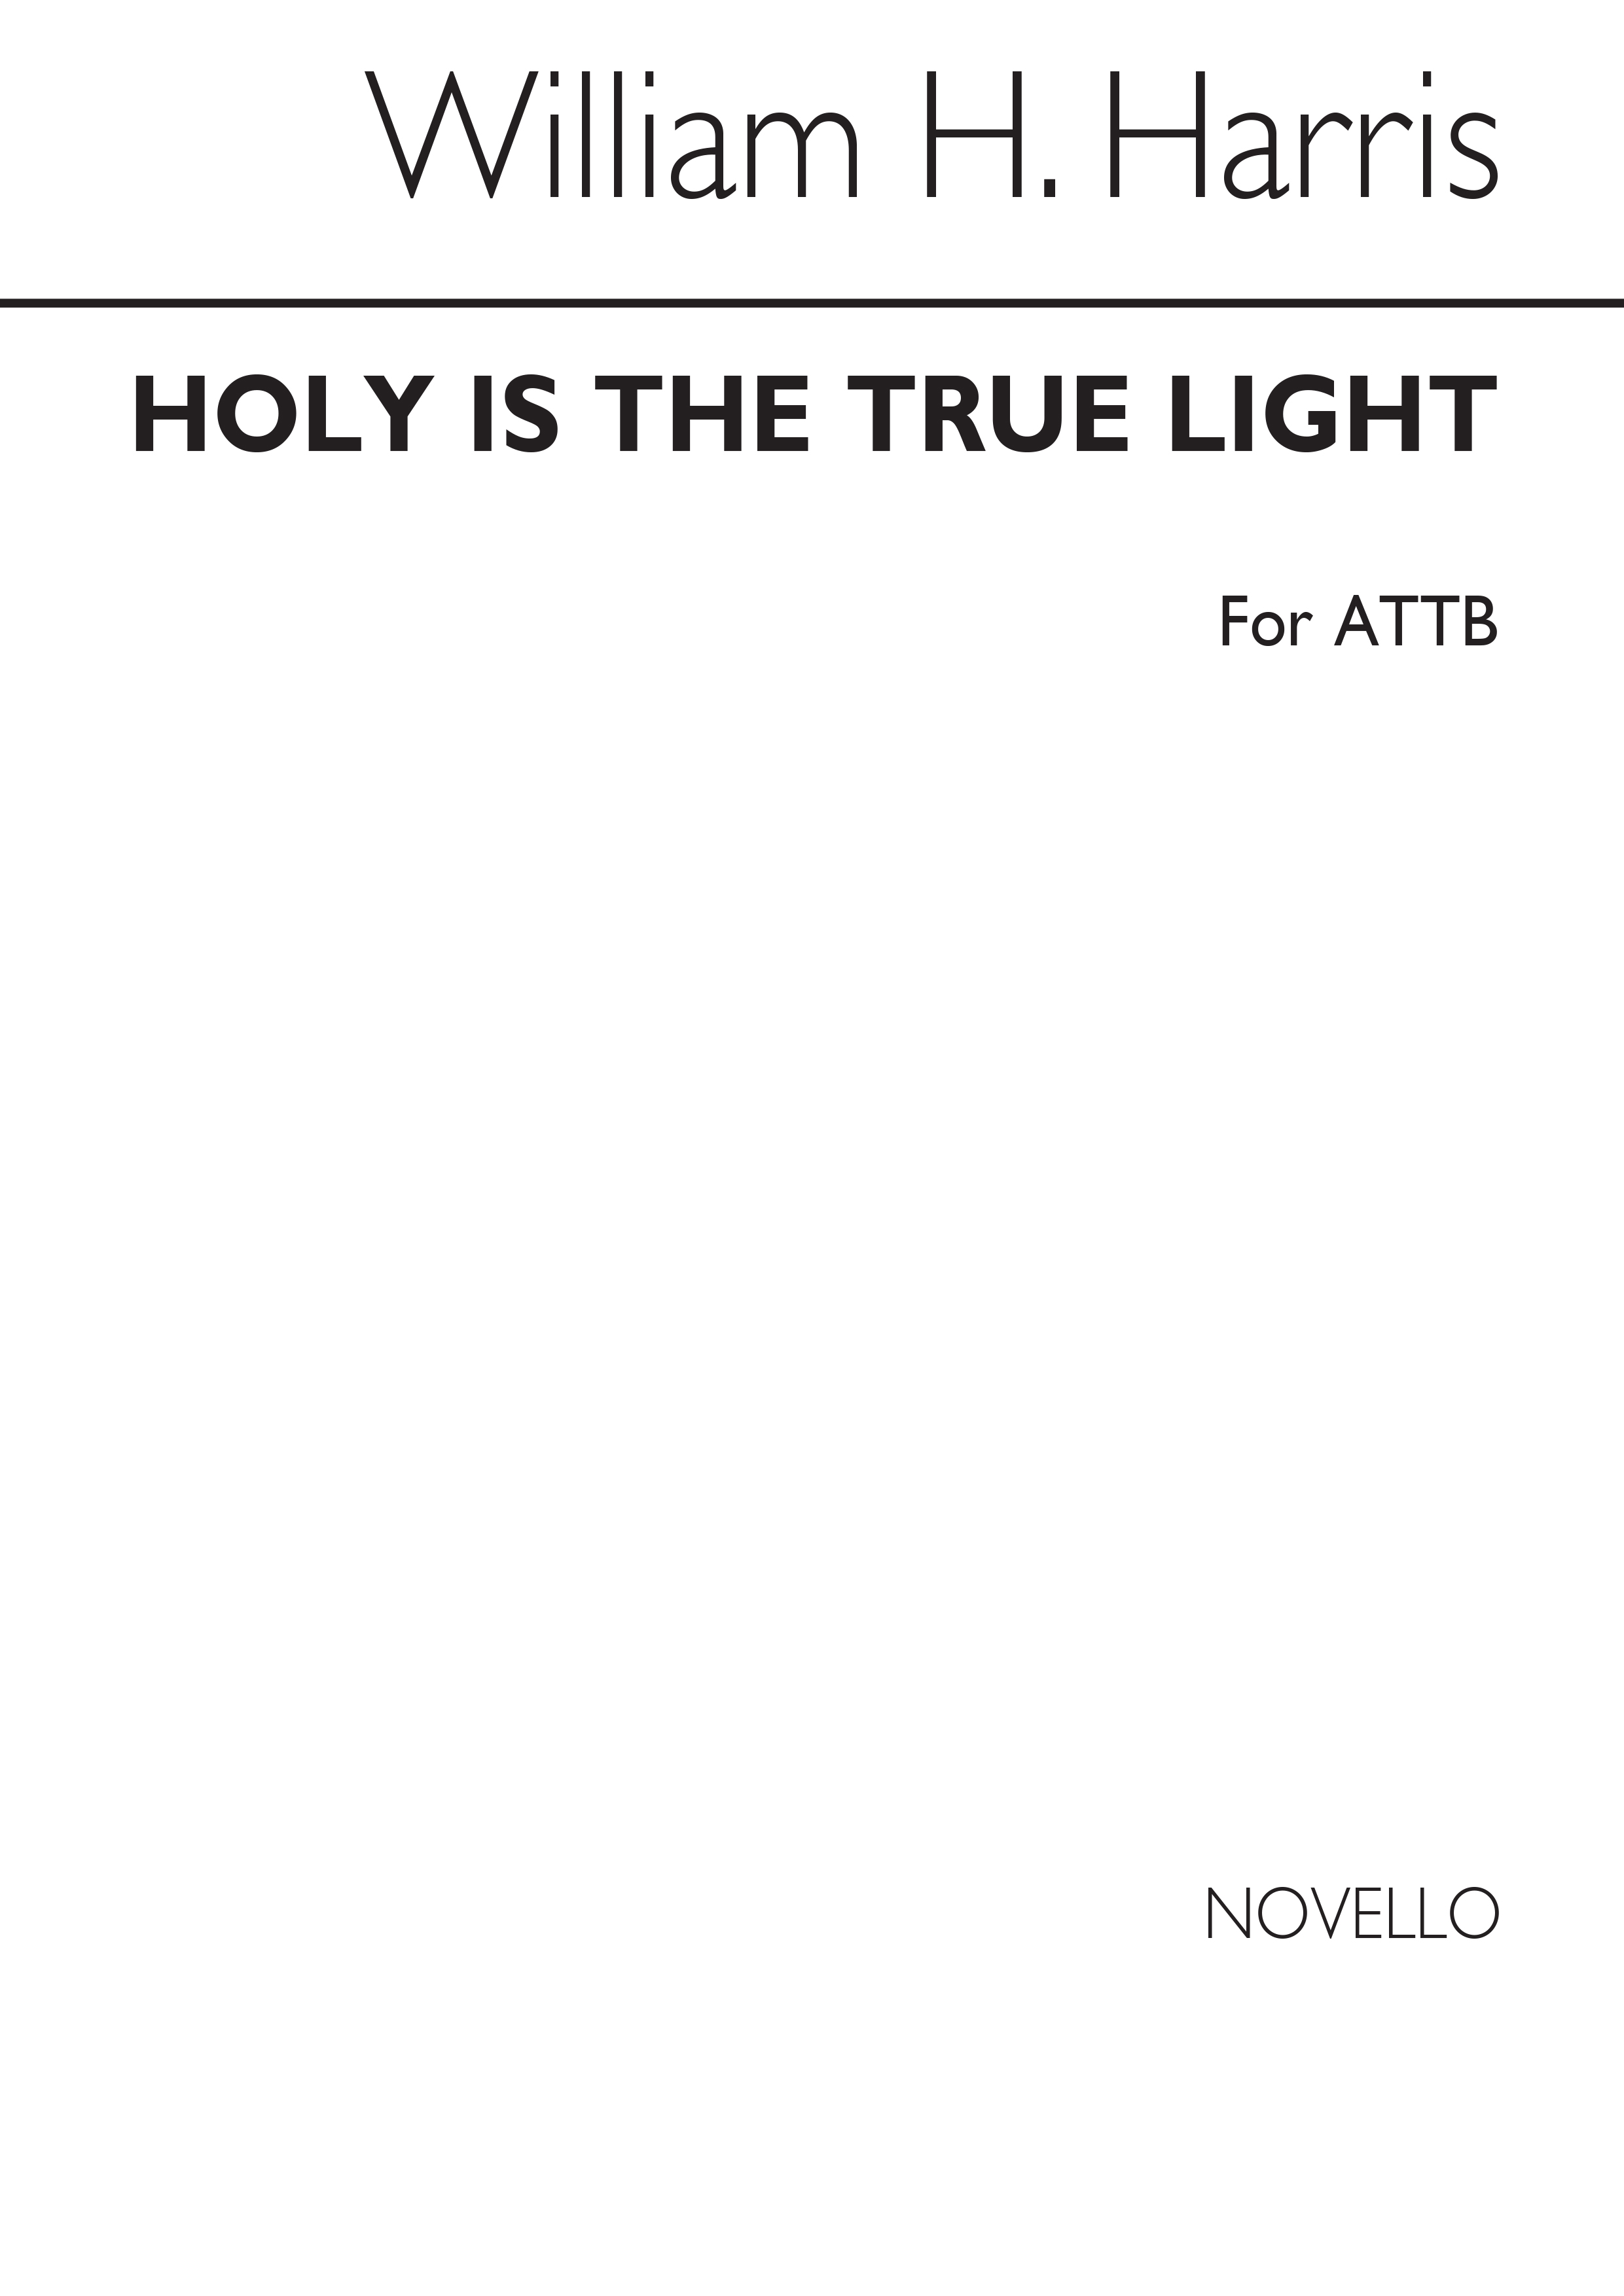 William H. Harris: Holy Is The True Light (ATTB)